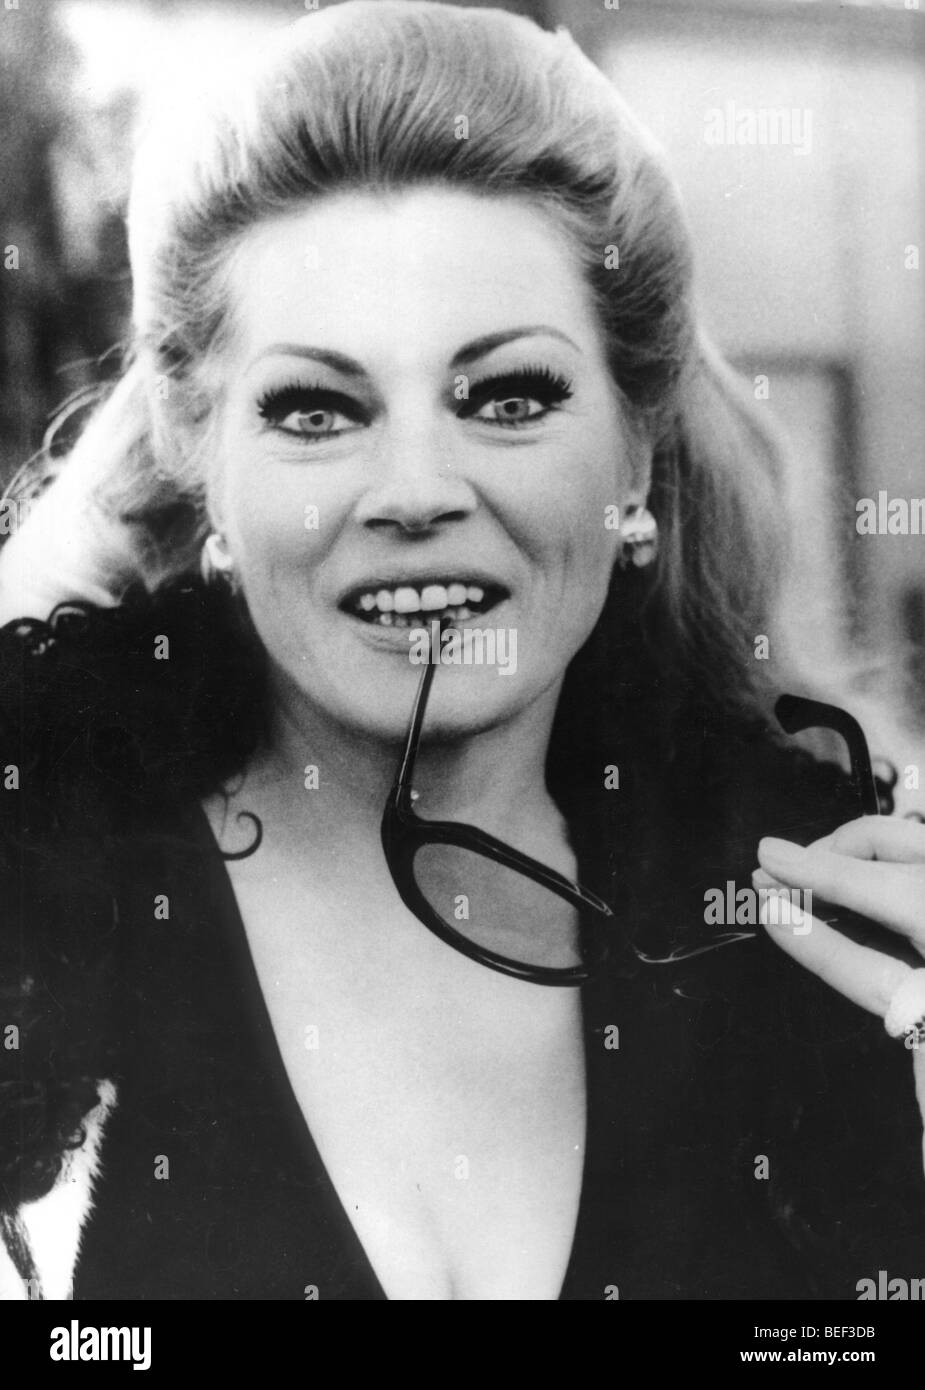 1010650 (9003107) Anita EKBERG, schwedische Schauspielerin, Portrait vom 28.01.1970. 'Nutzung nur gegen Honorar, Beleg, Stock Photo